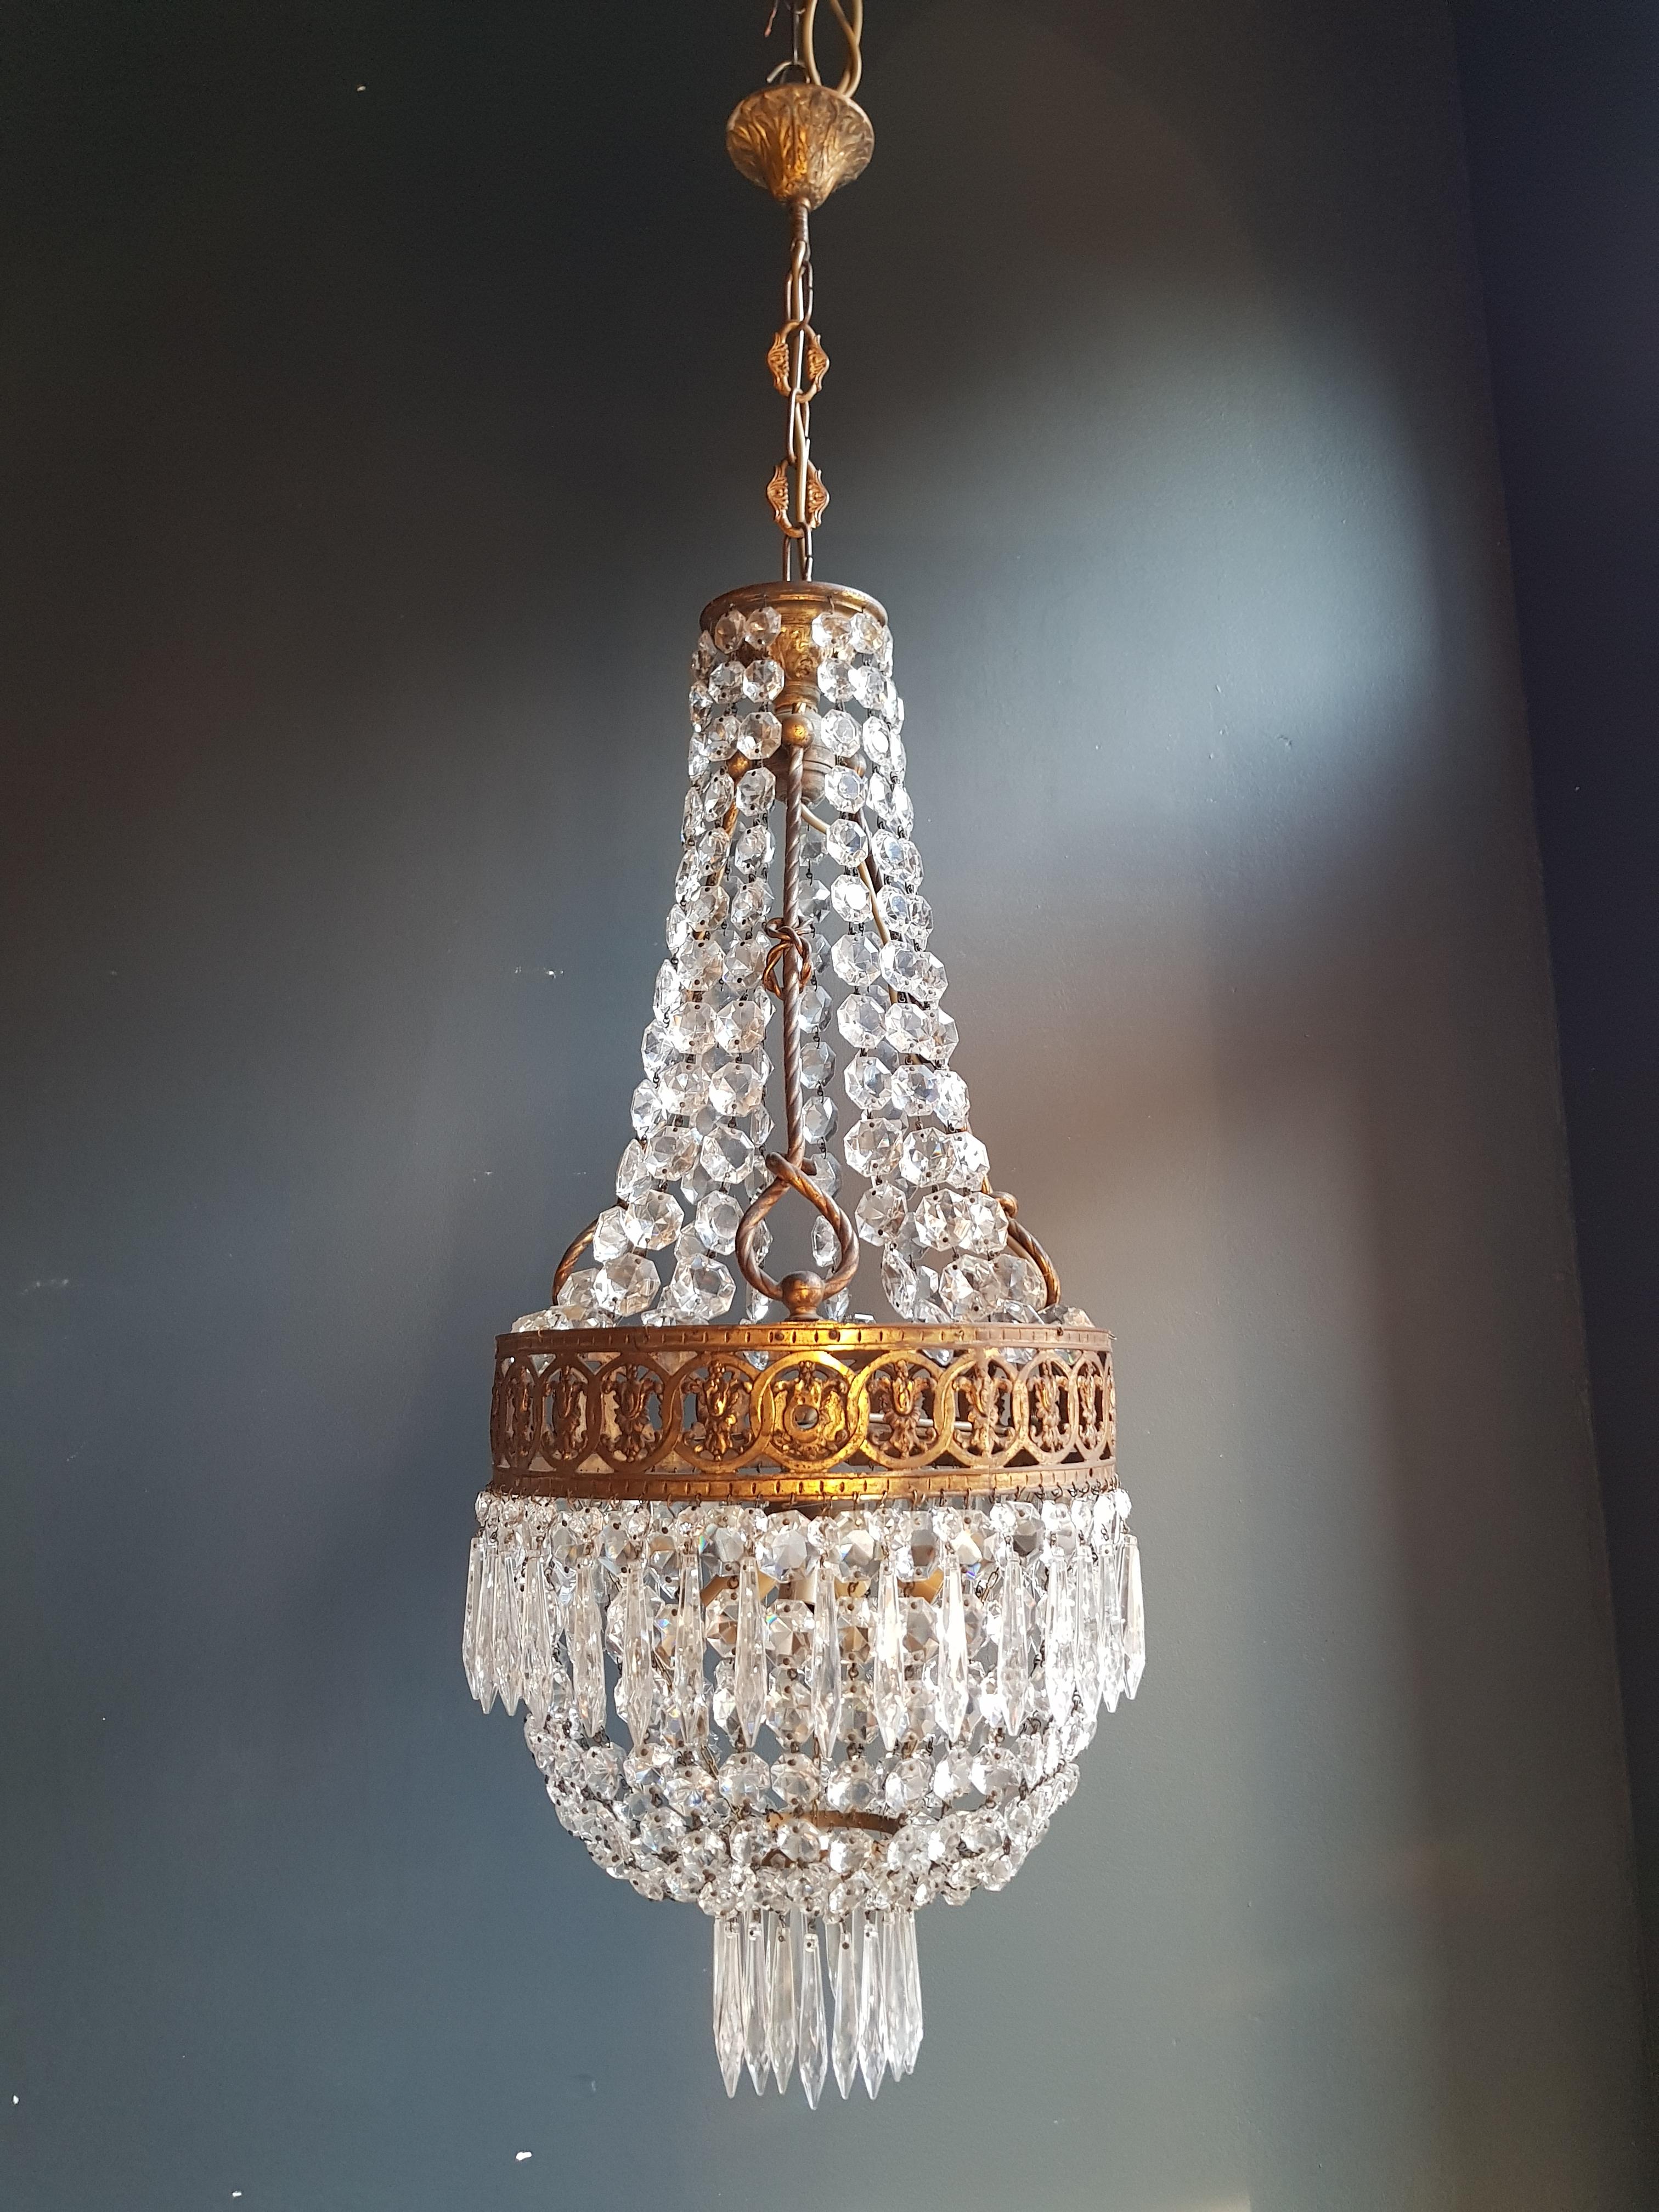 Wir präsentieren eine exquisite Empire-Kristalllüster-Deckenlampe aus Messing, ein antikes Jugendstil-Schätzchen in Form eines Korblüsters.

Dieser Kronleuchter aus der Zeit um 1930 ist ein original erhaltenes Stück, das seine zeitlose Schönheit